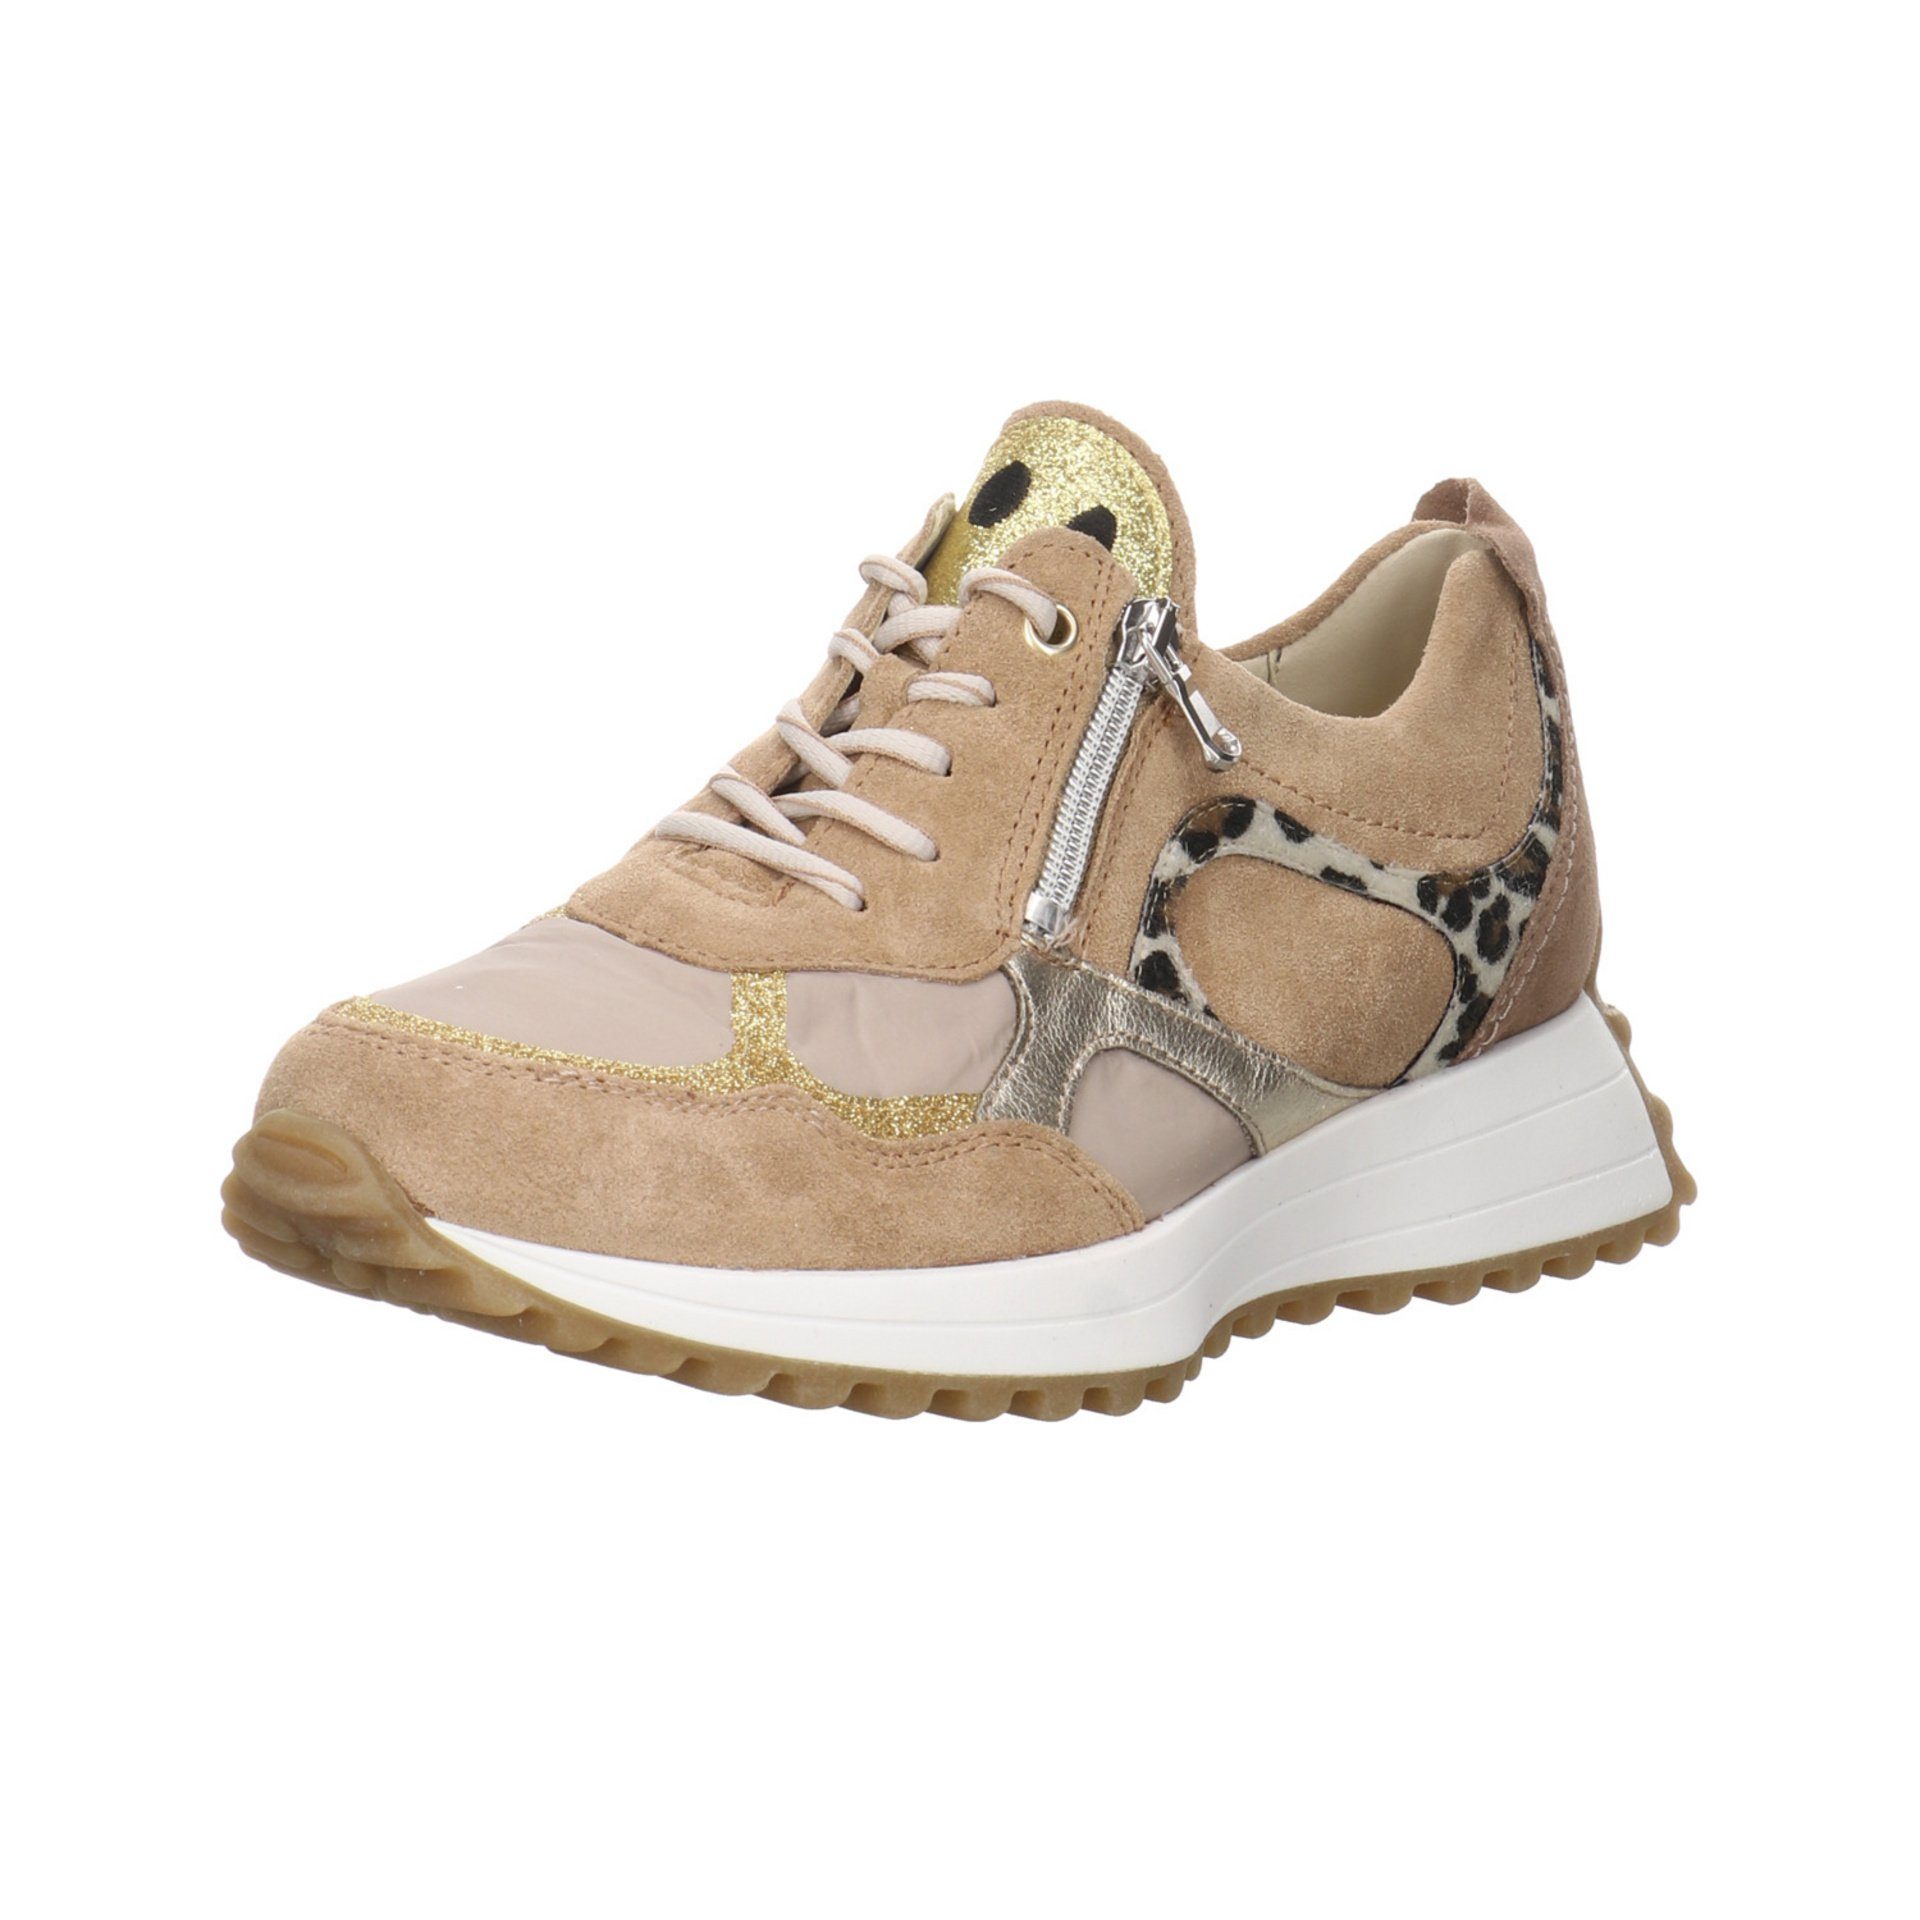 Waldläufer Damen Sneaker Schuhe Pinky Sneaker Sneaker Leder-/Textilkombination toffee